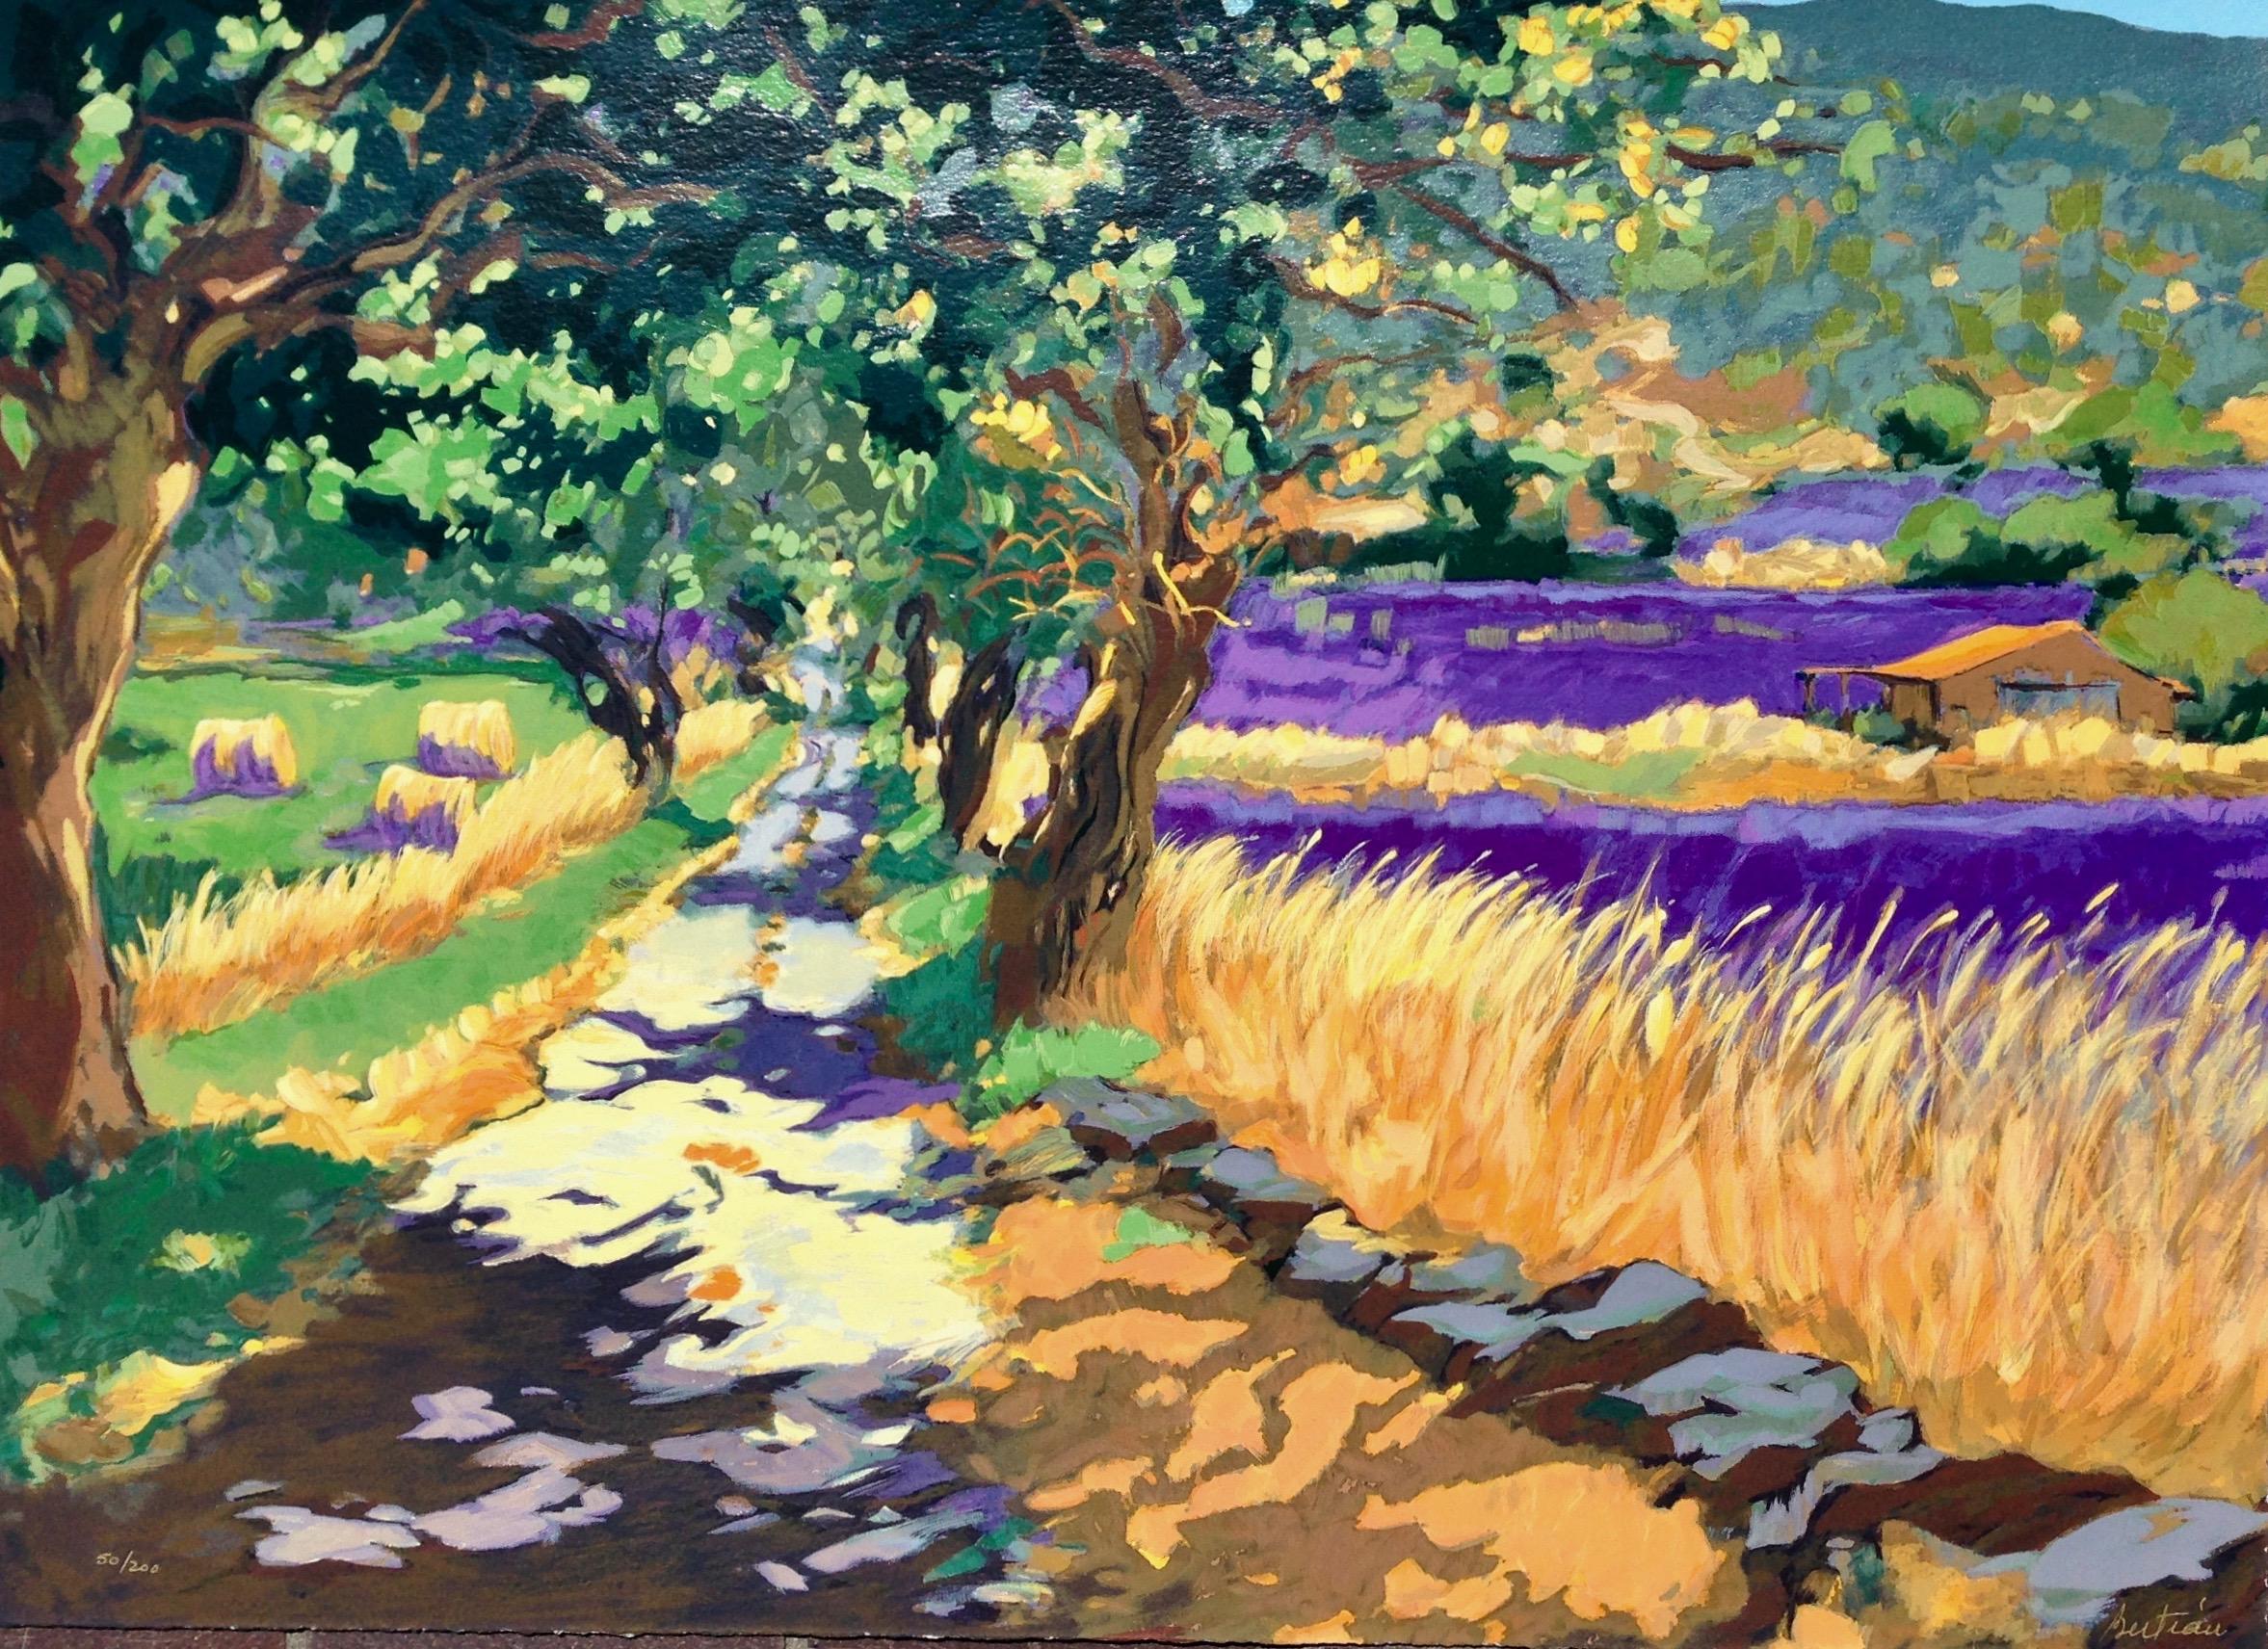 Landscape Print Maria Bertrán - "Road To Sault" (La route vers Sault)  Sérigraphie impressionniste contemporaine de Provence, France